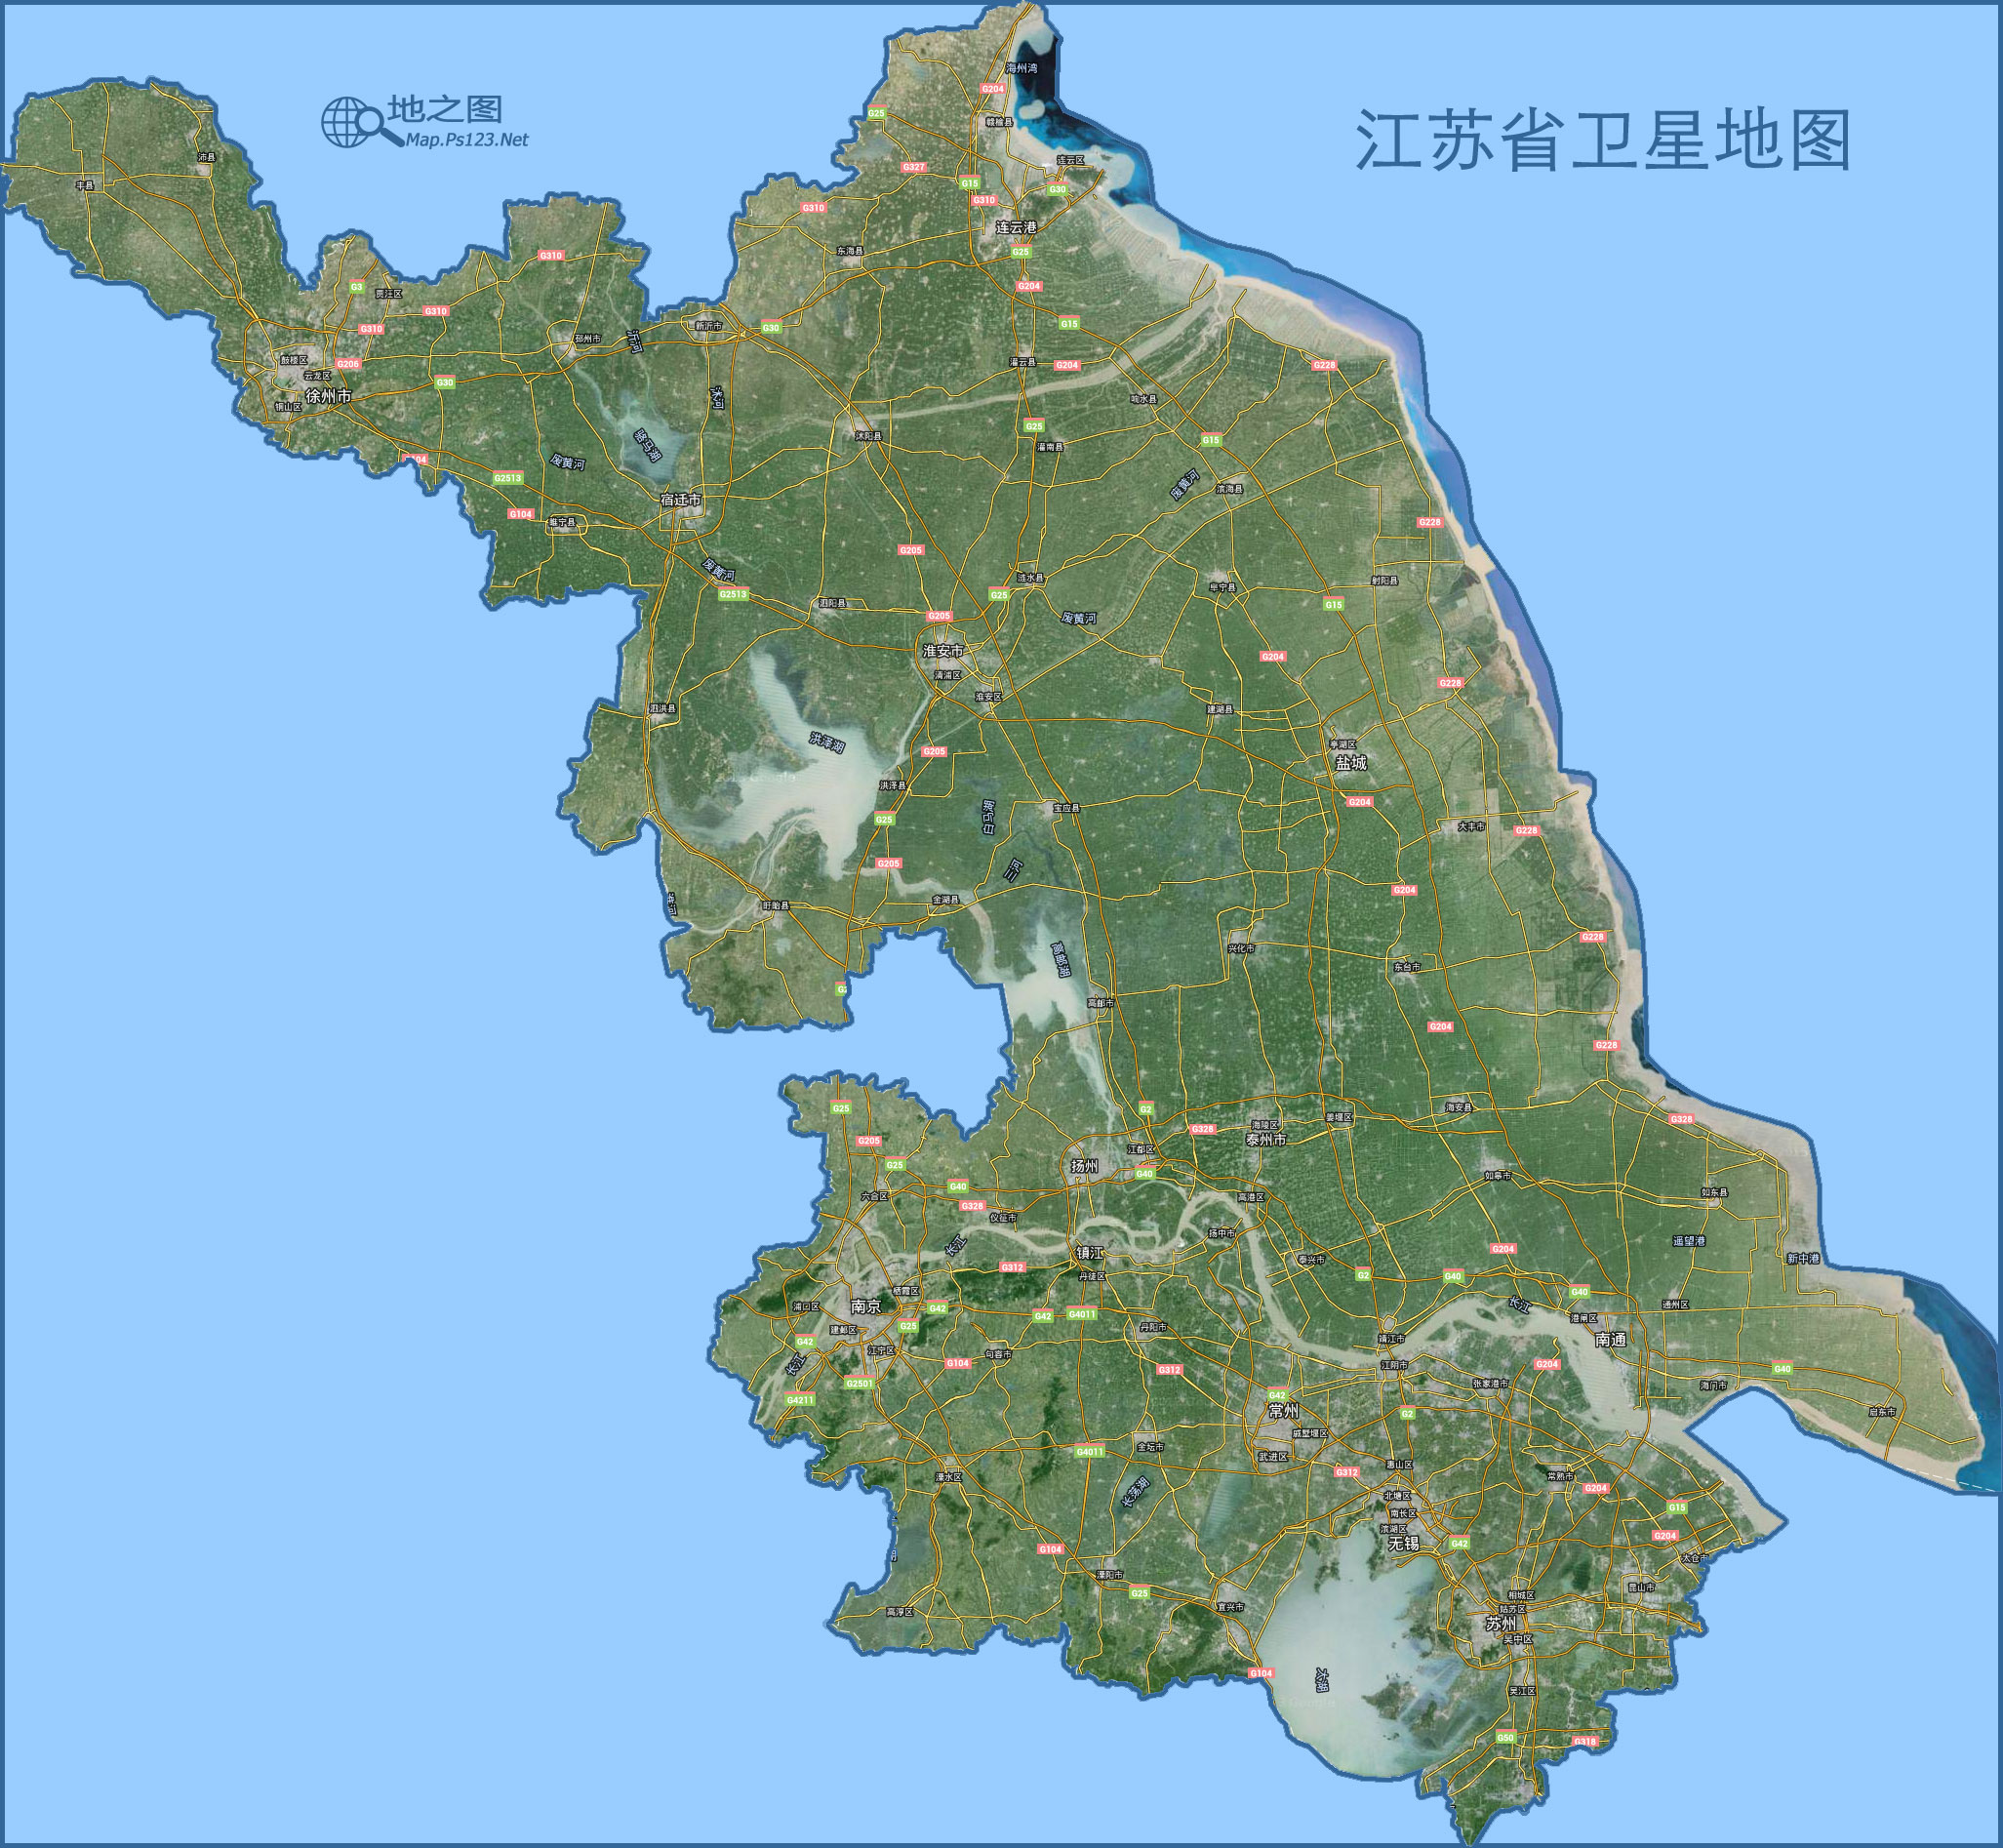 江苏地图(卫星图)图片